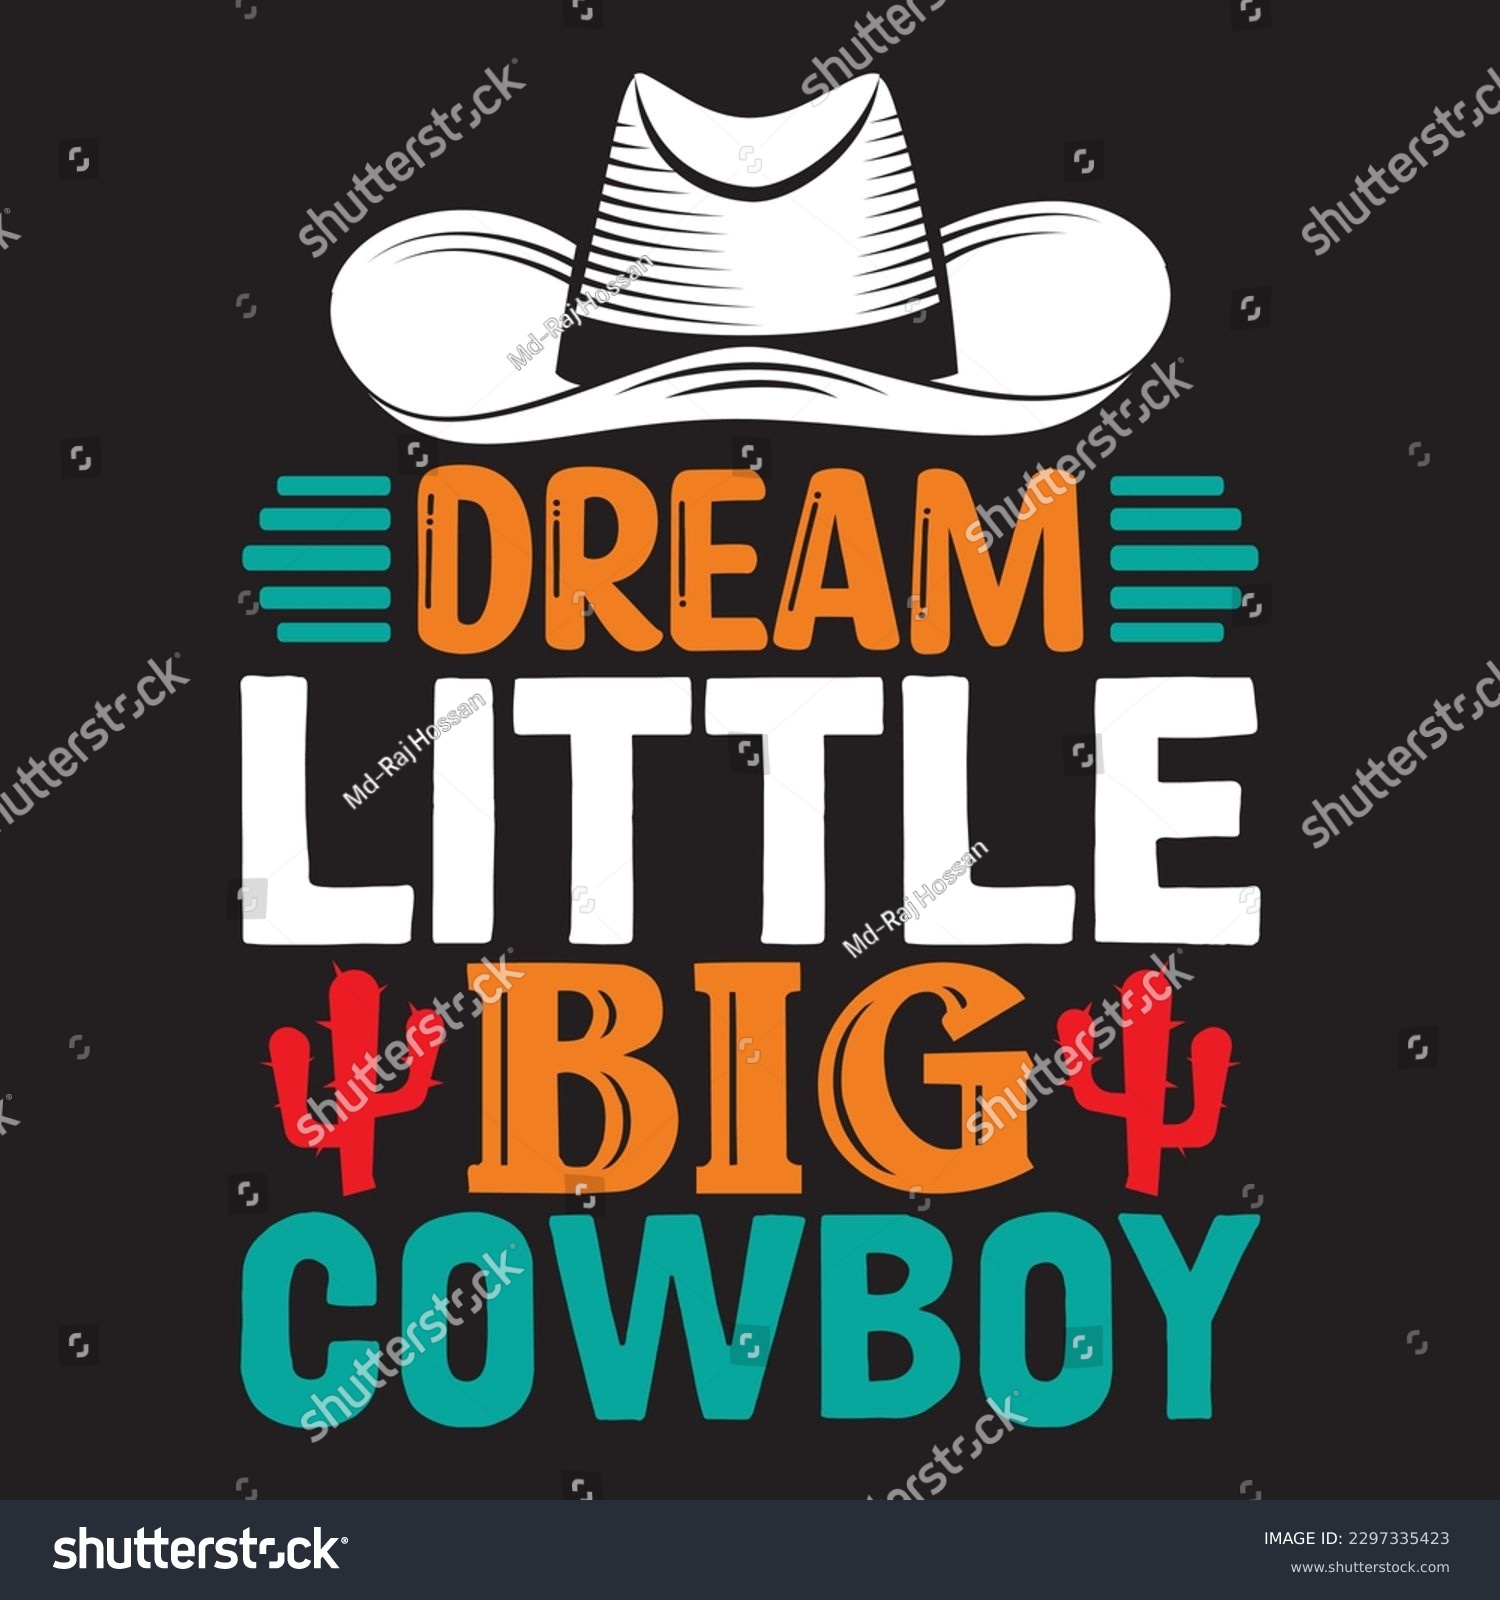 SVG of Dream Little Big Cowboy T-shirt Design Vector File svg